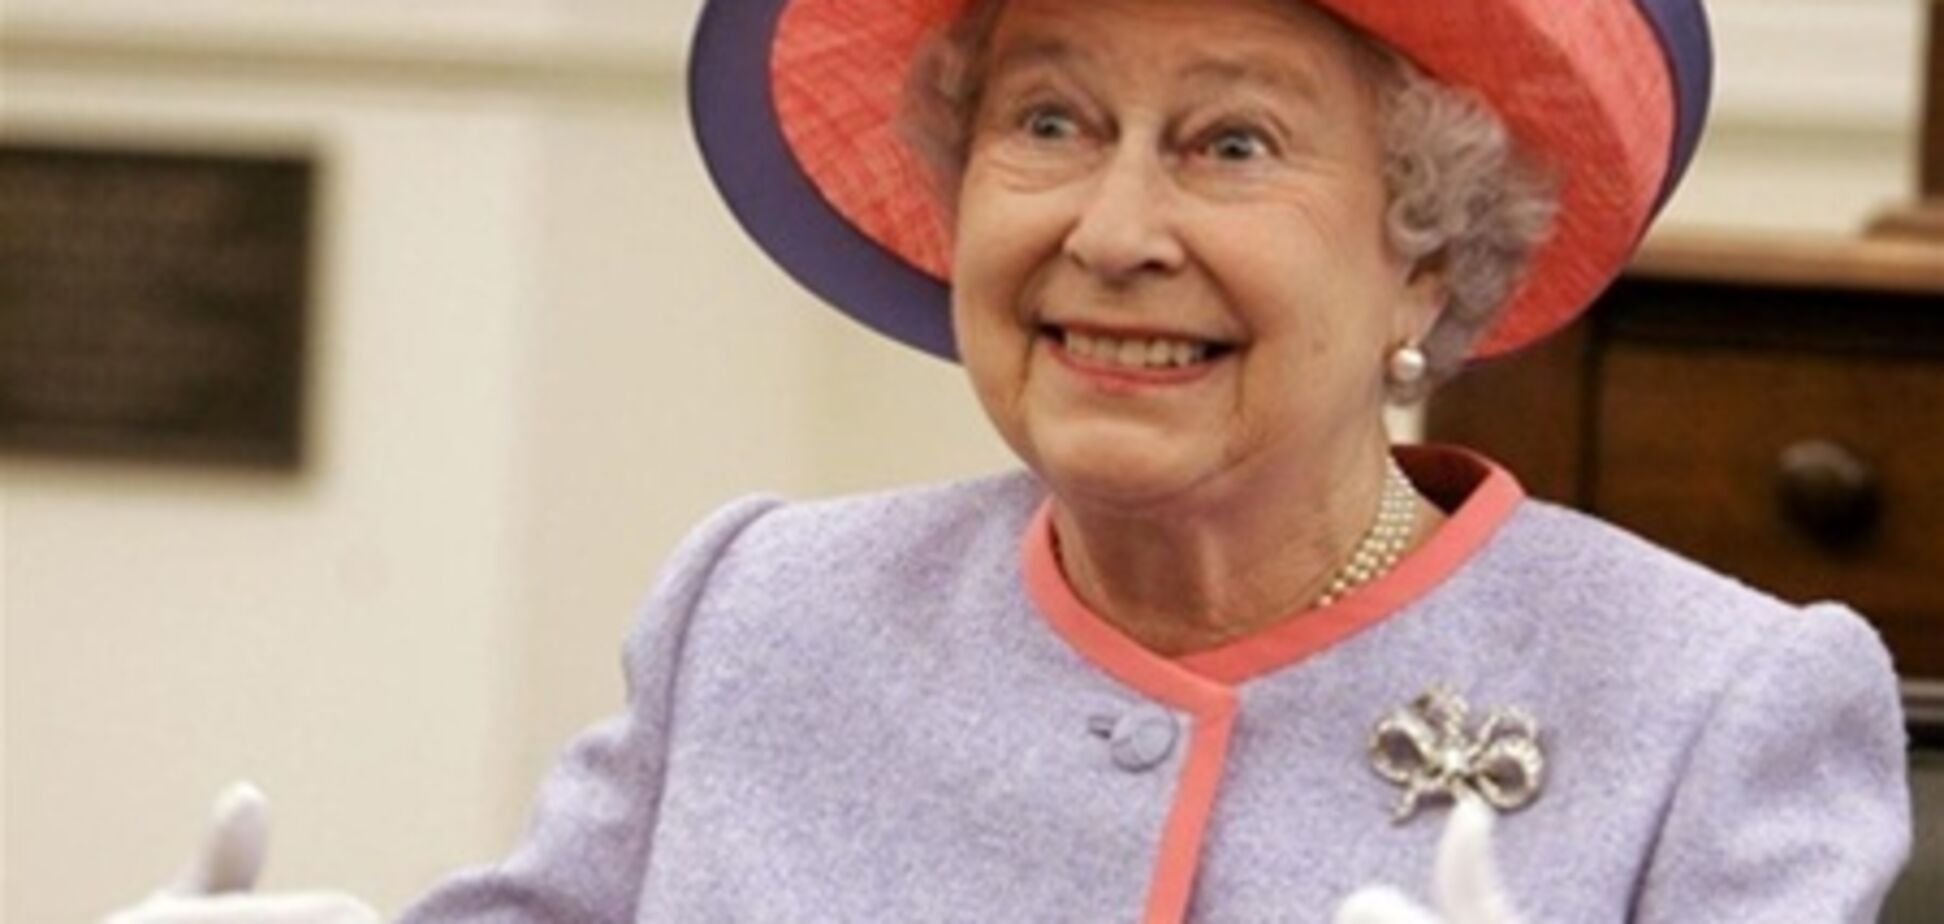 Елизавета II отпразднует 87-й день рождения с семьей